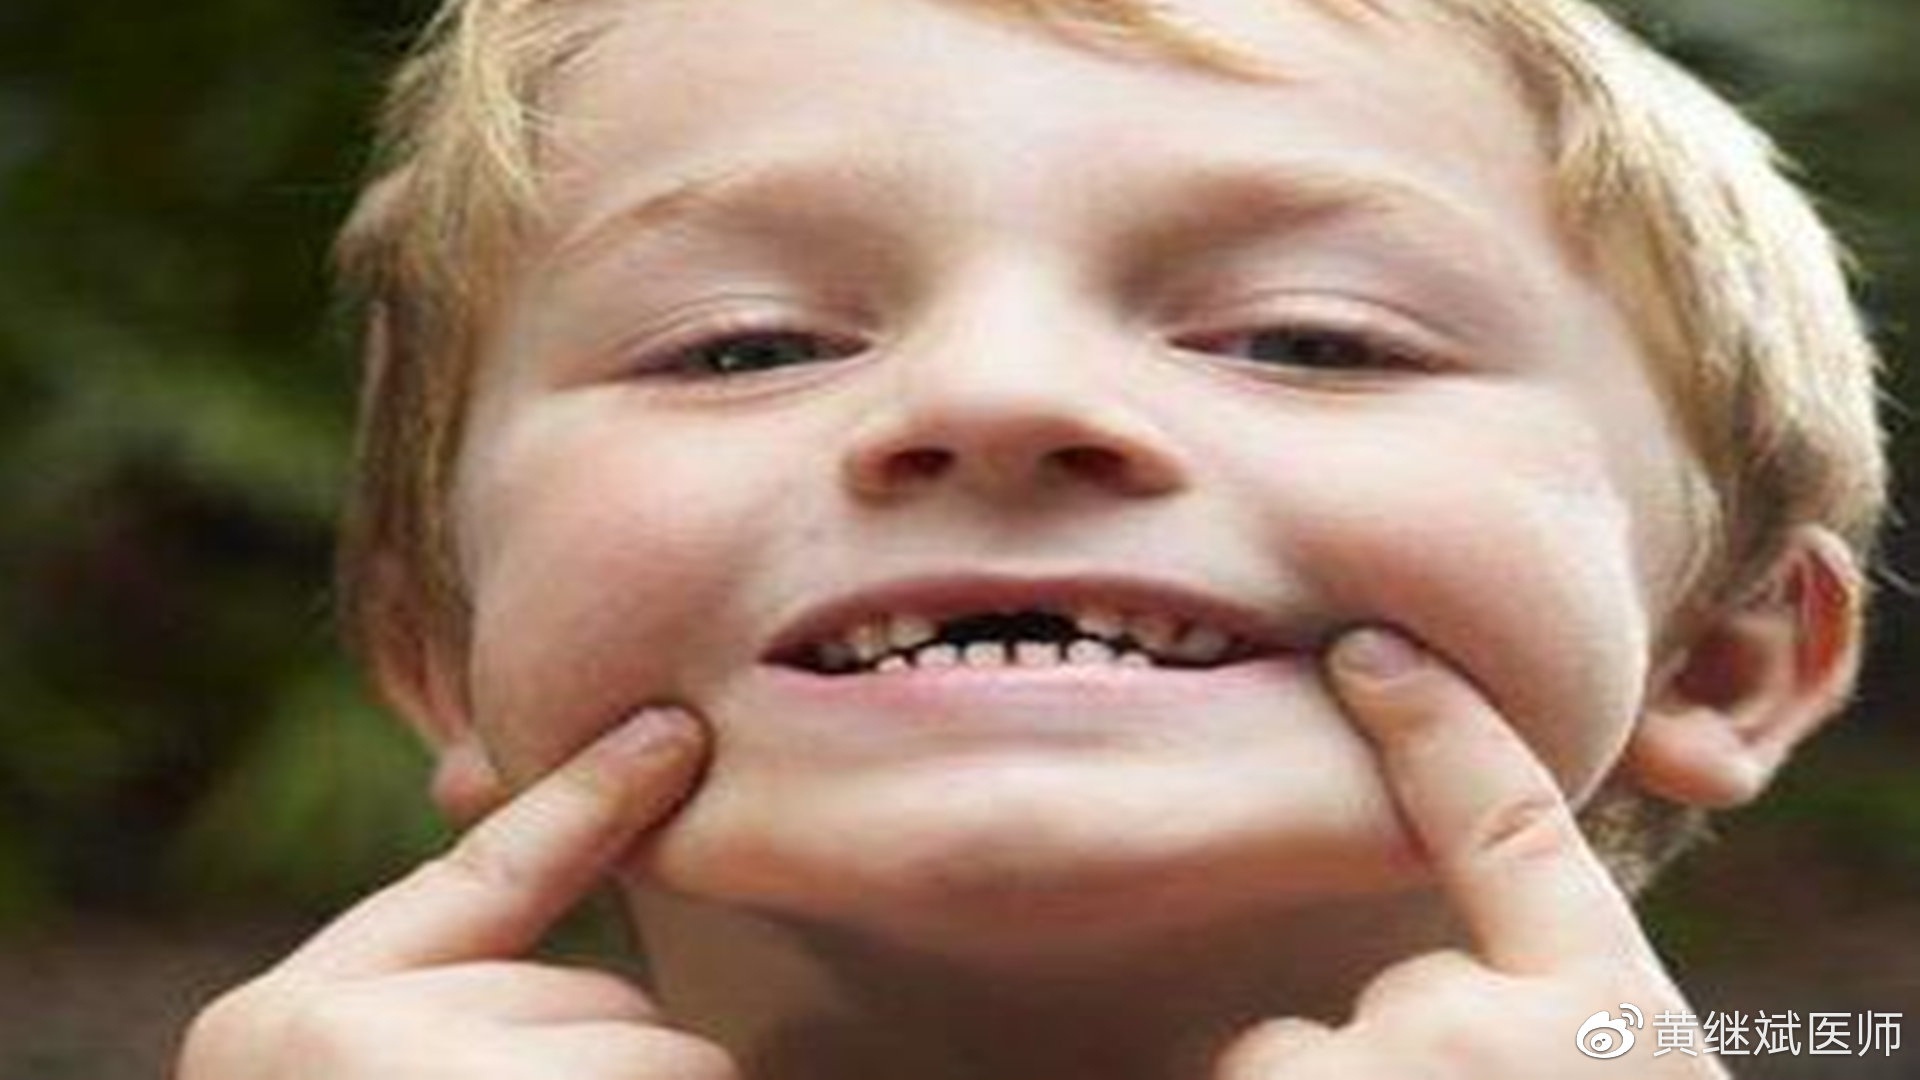 儿童换牙齿顺序图 儿童换牙齿时间-万县网